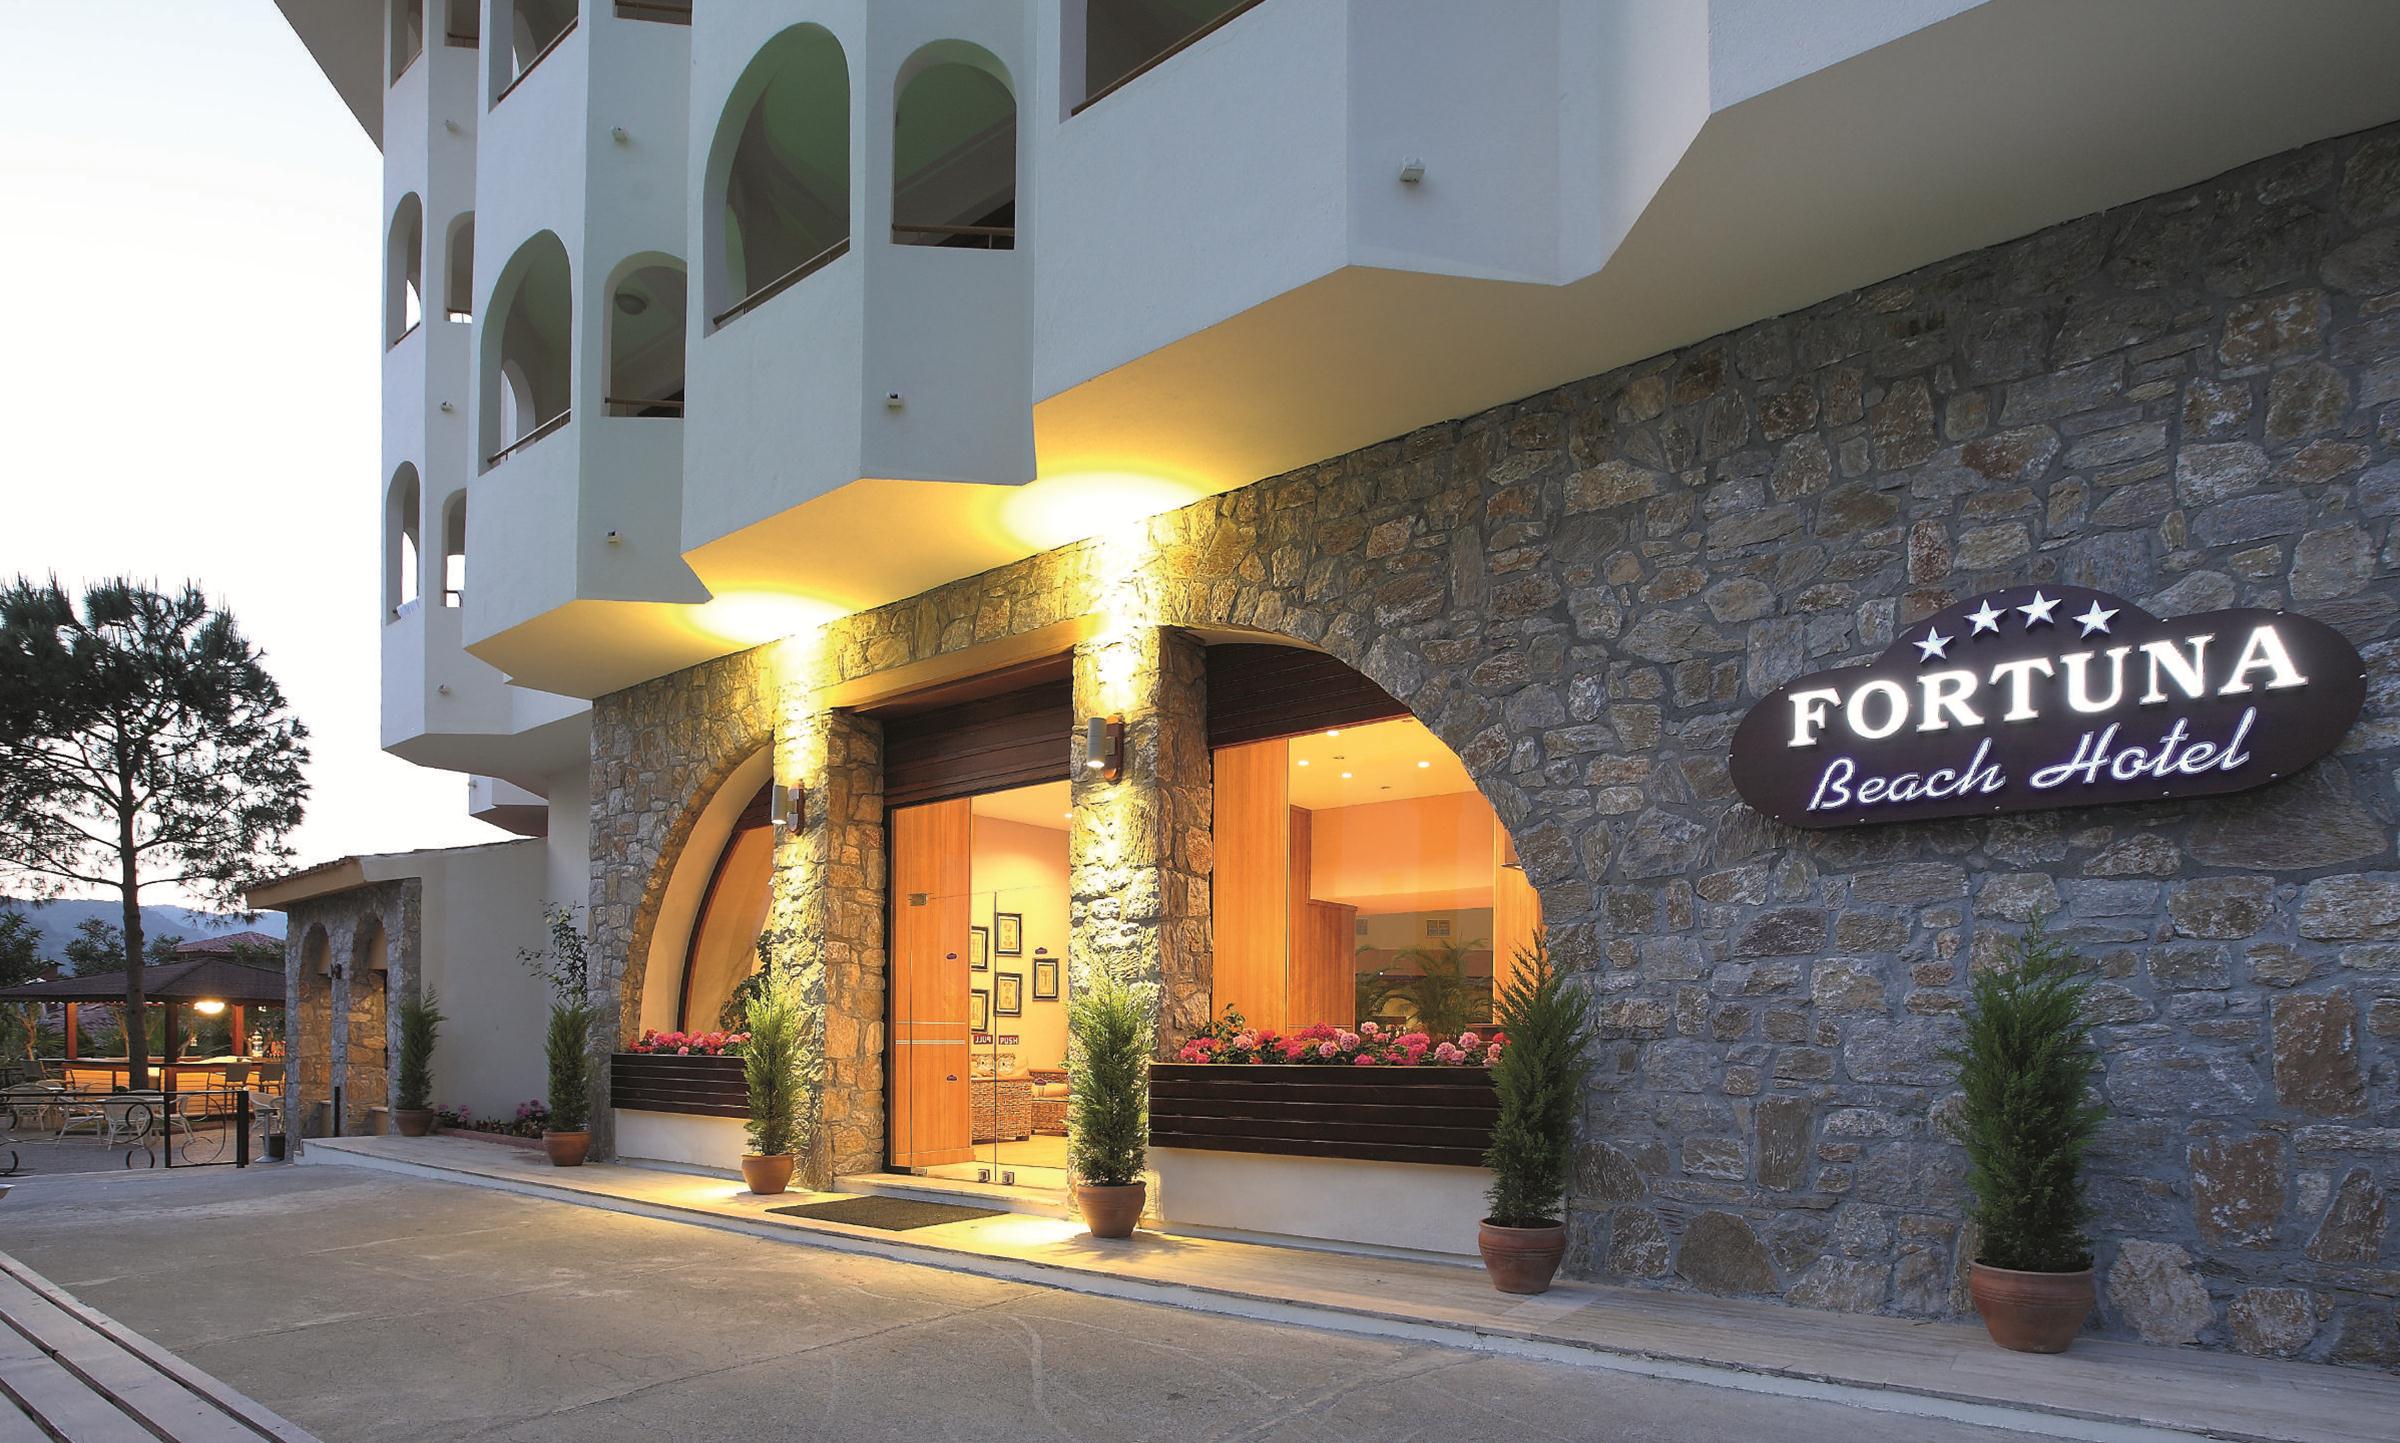 FORTUNA BEACH HOTEL